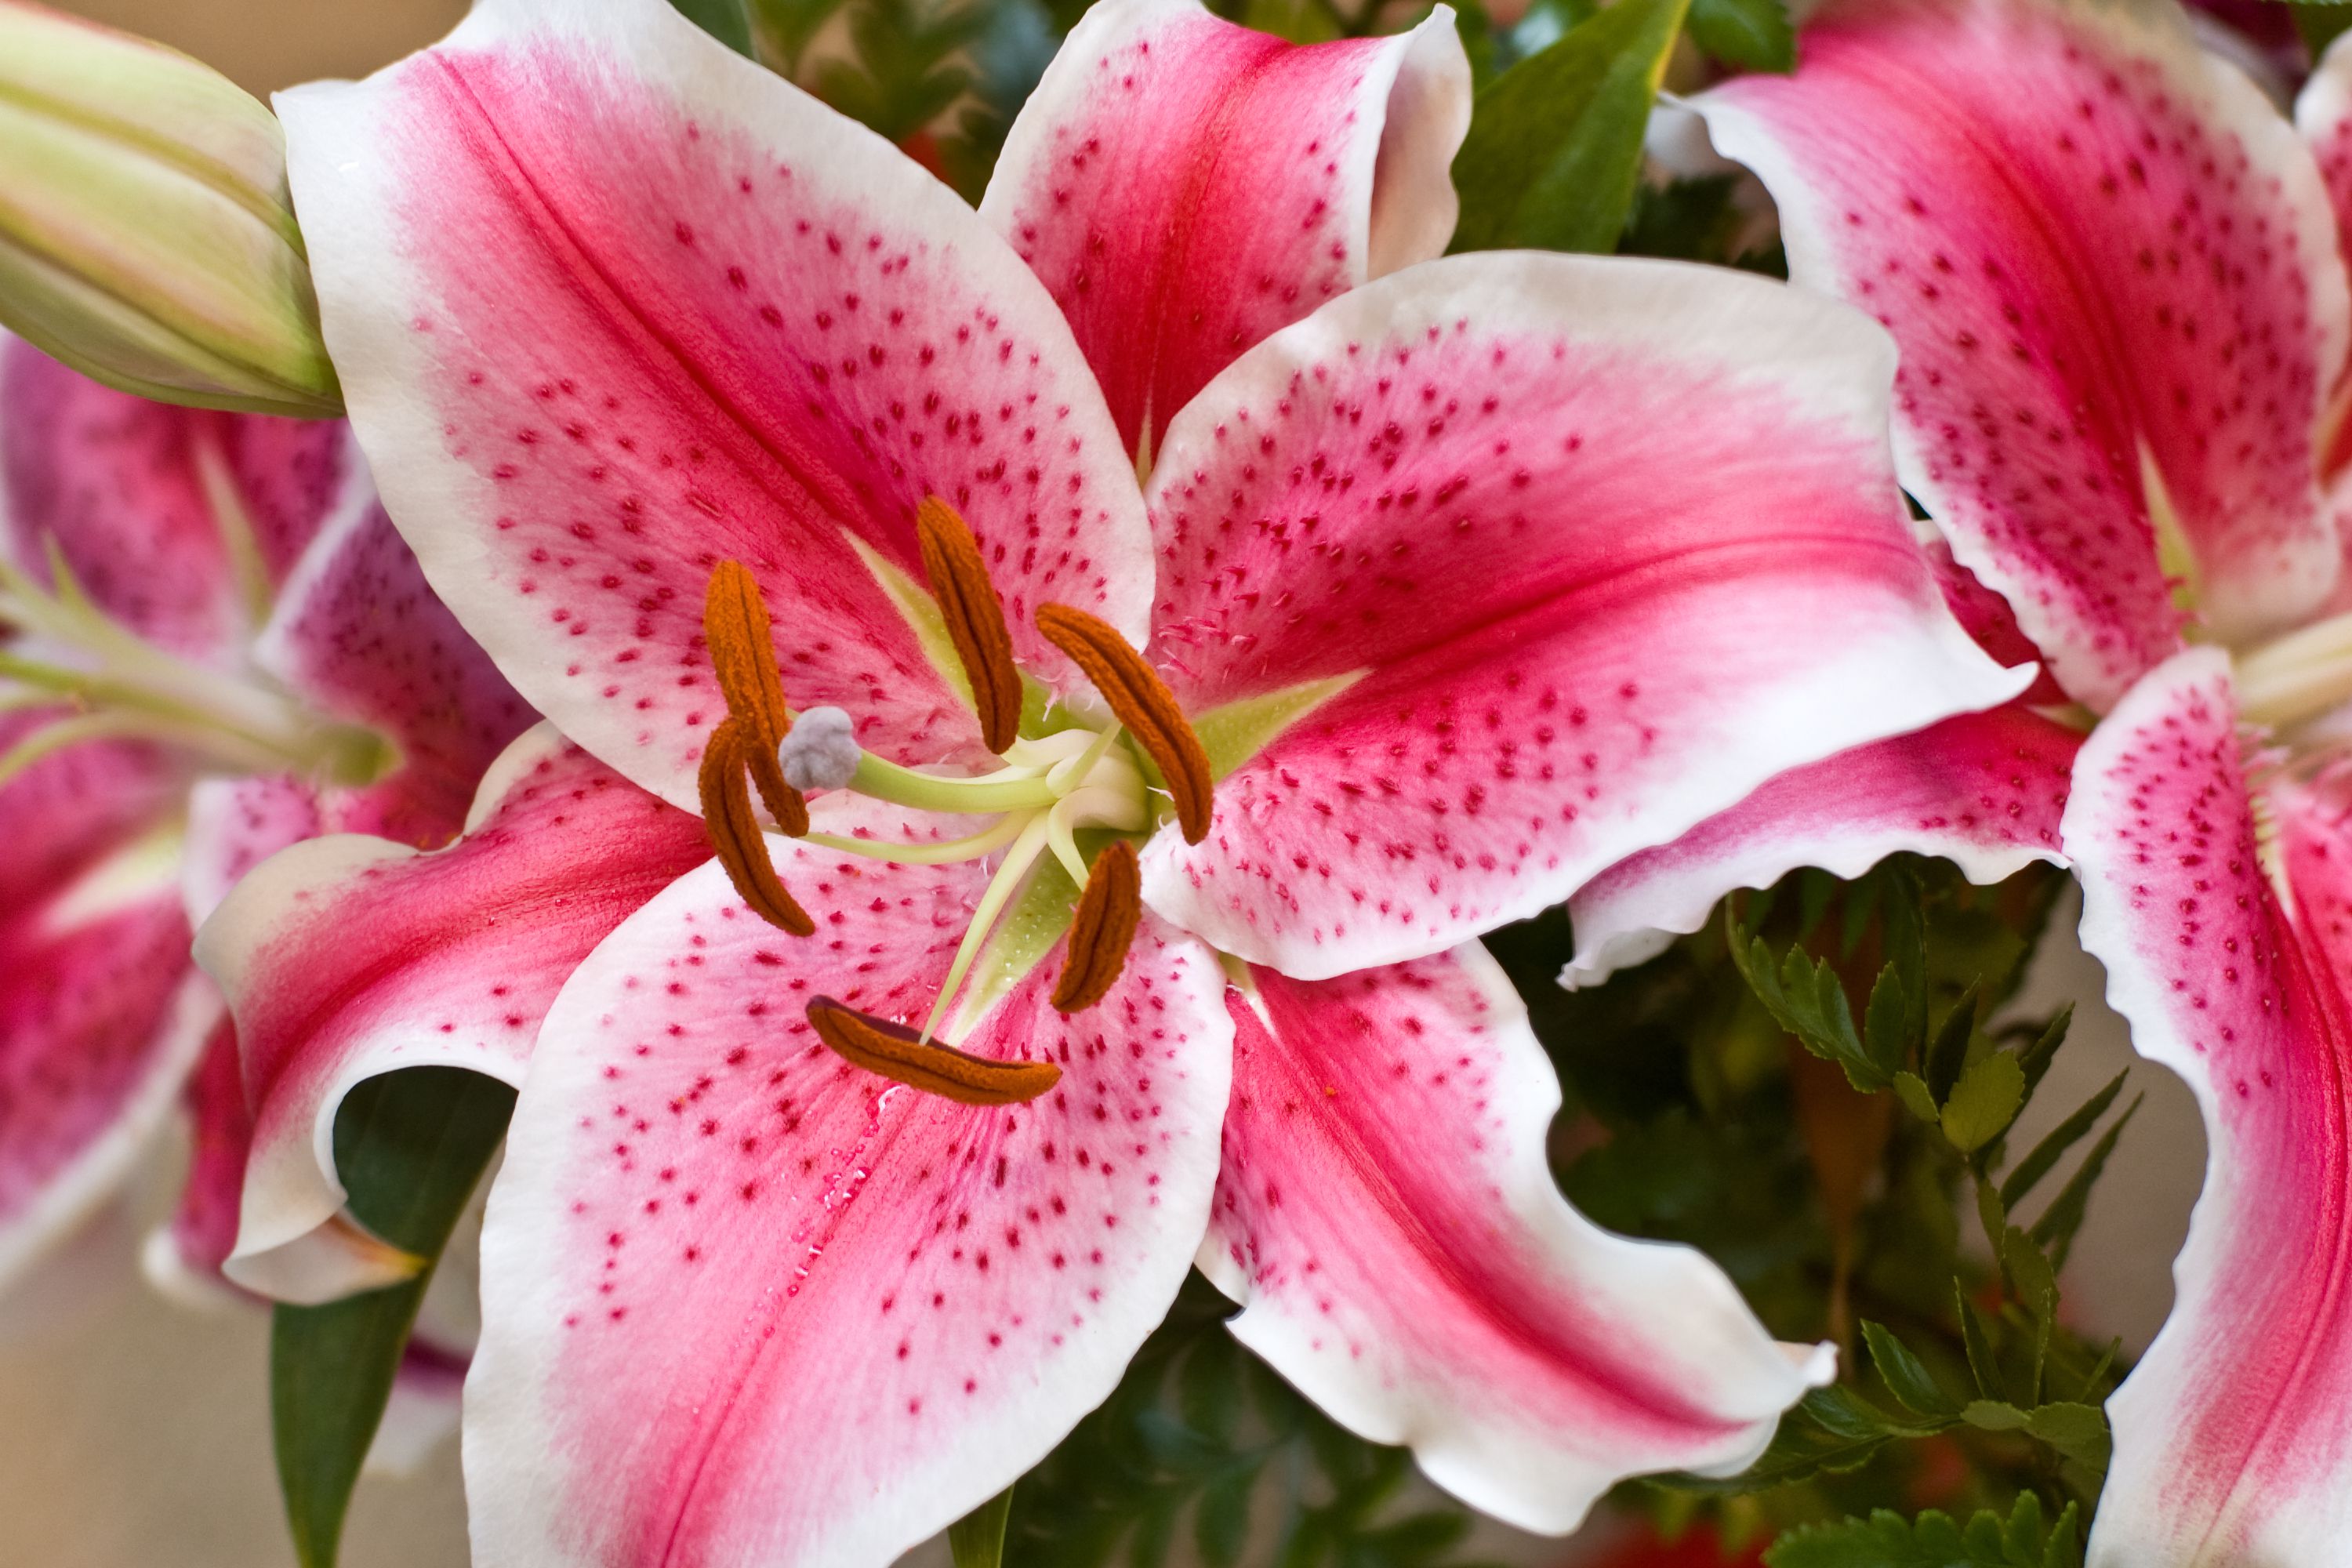 Star gazer oriental lily - westroot